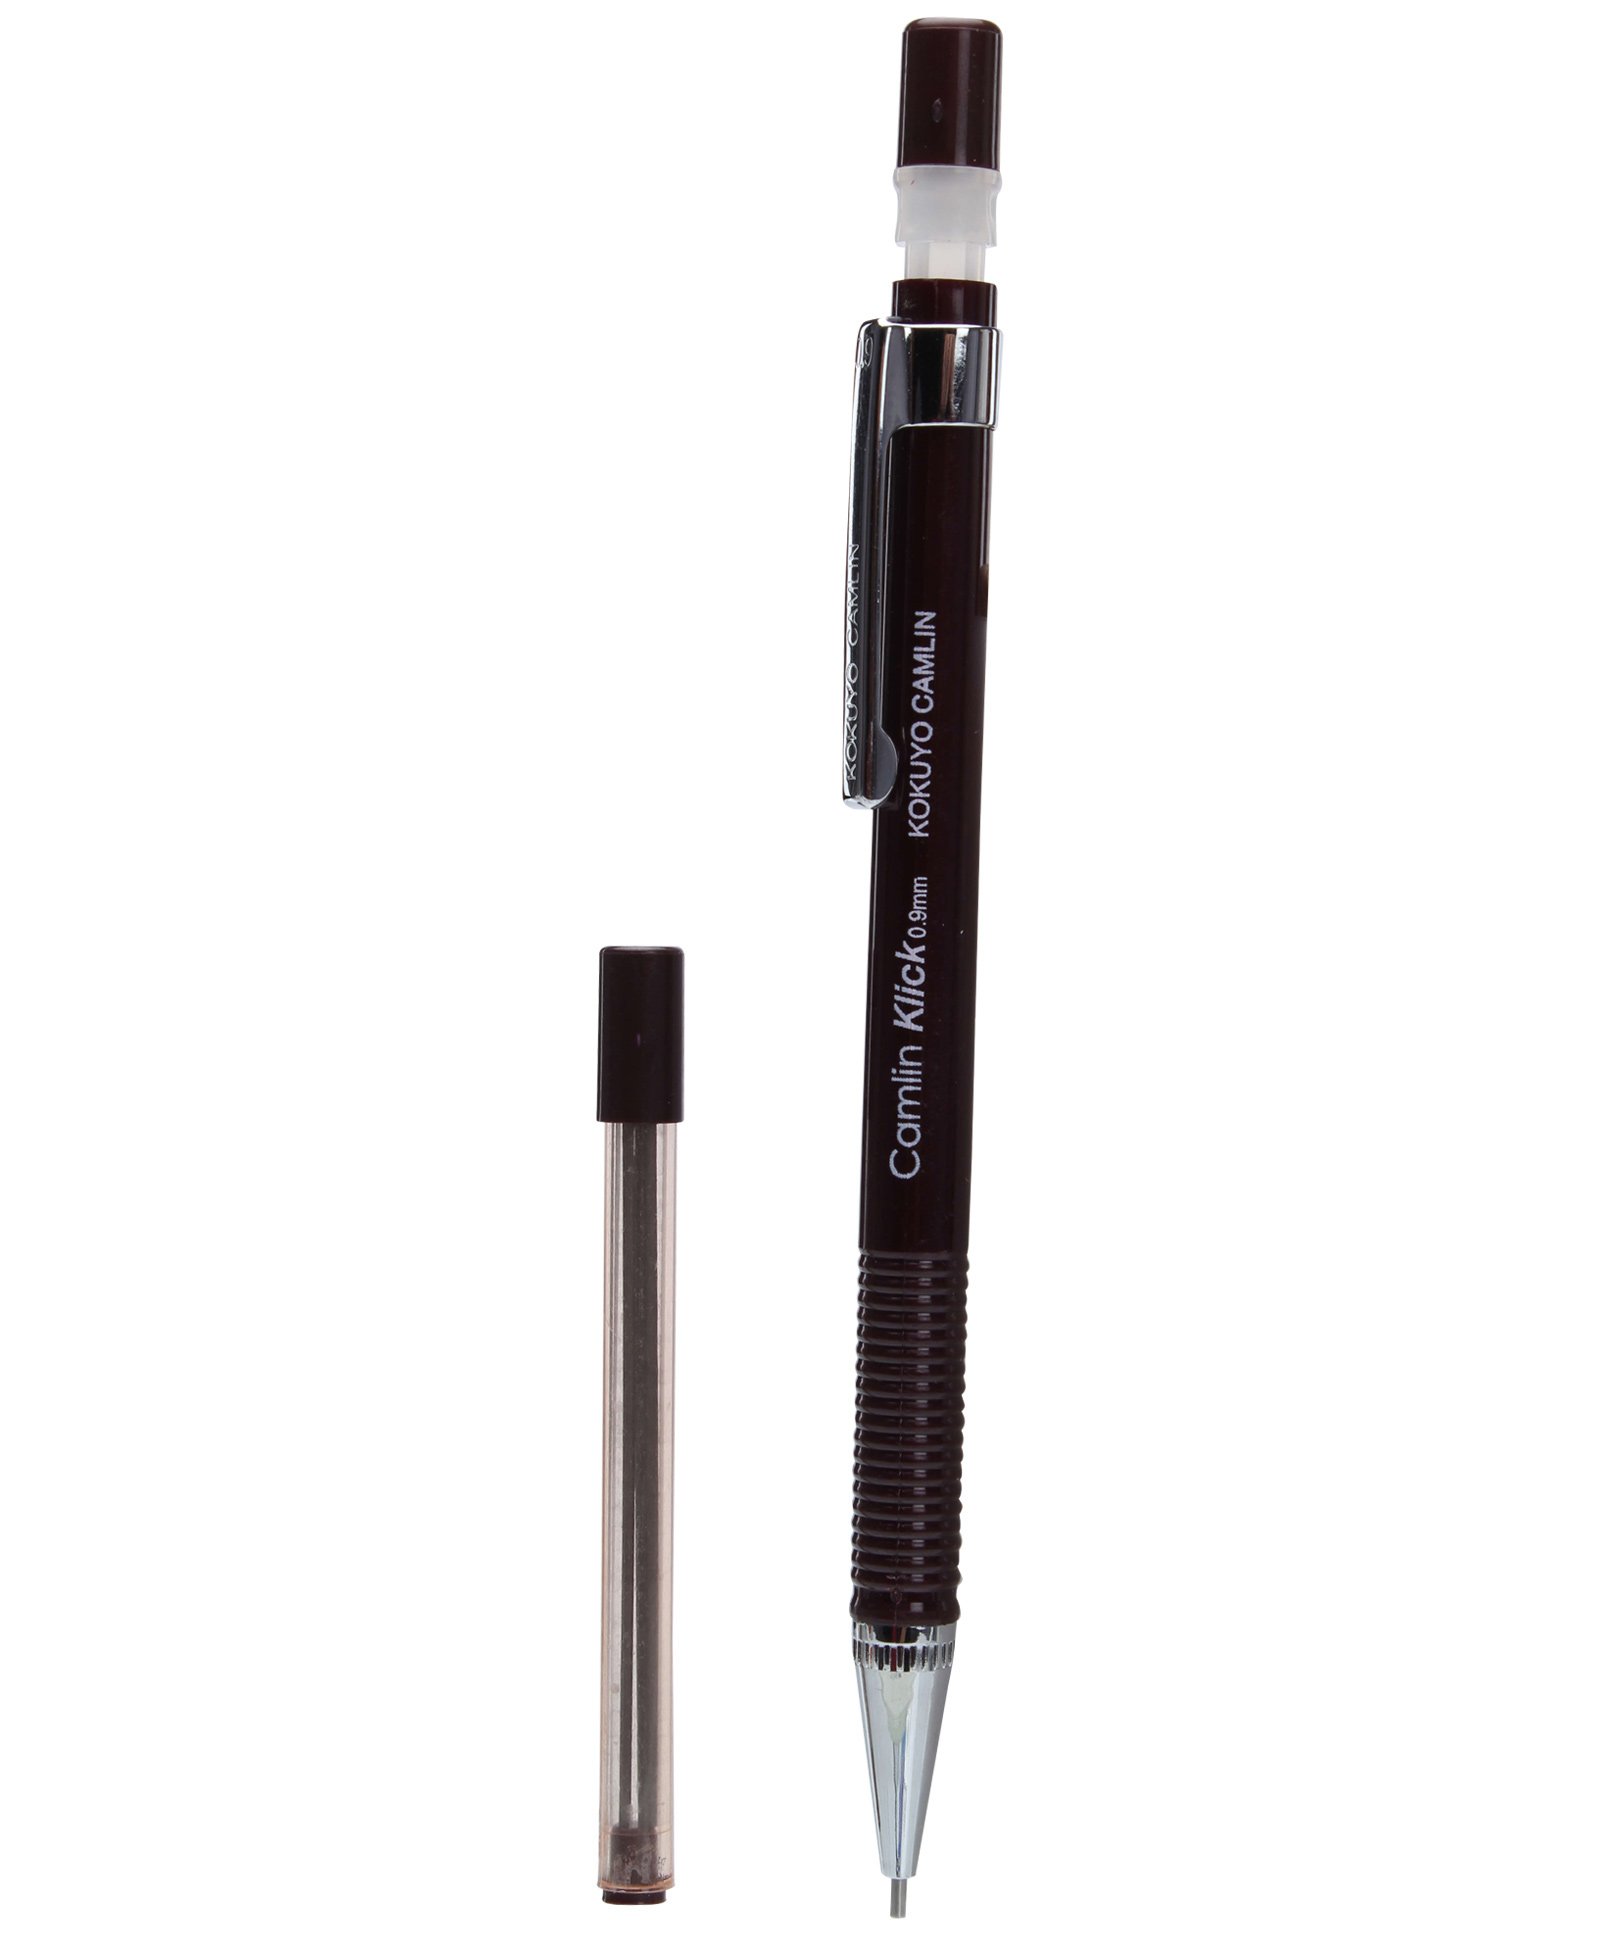 Urbanbae : Camlin Klick Pen Pencil 0.9 mm (Lead Pencil)